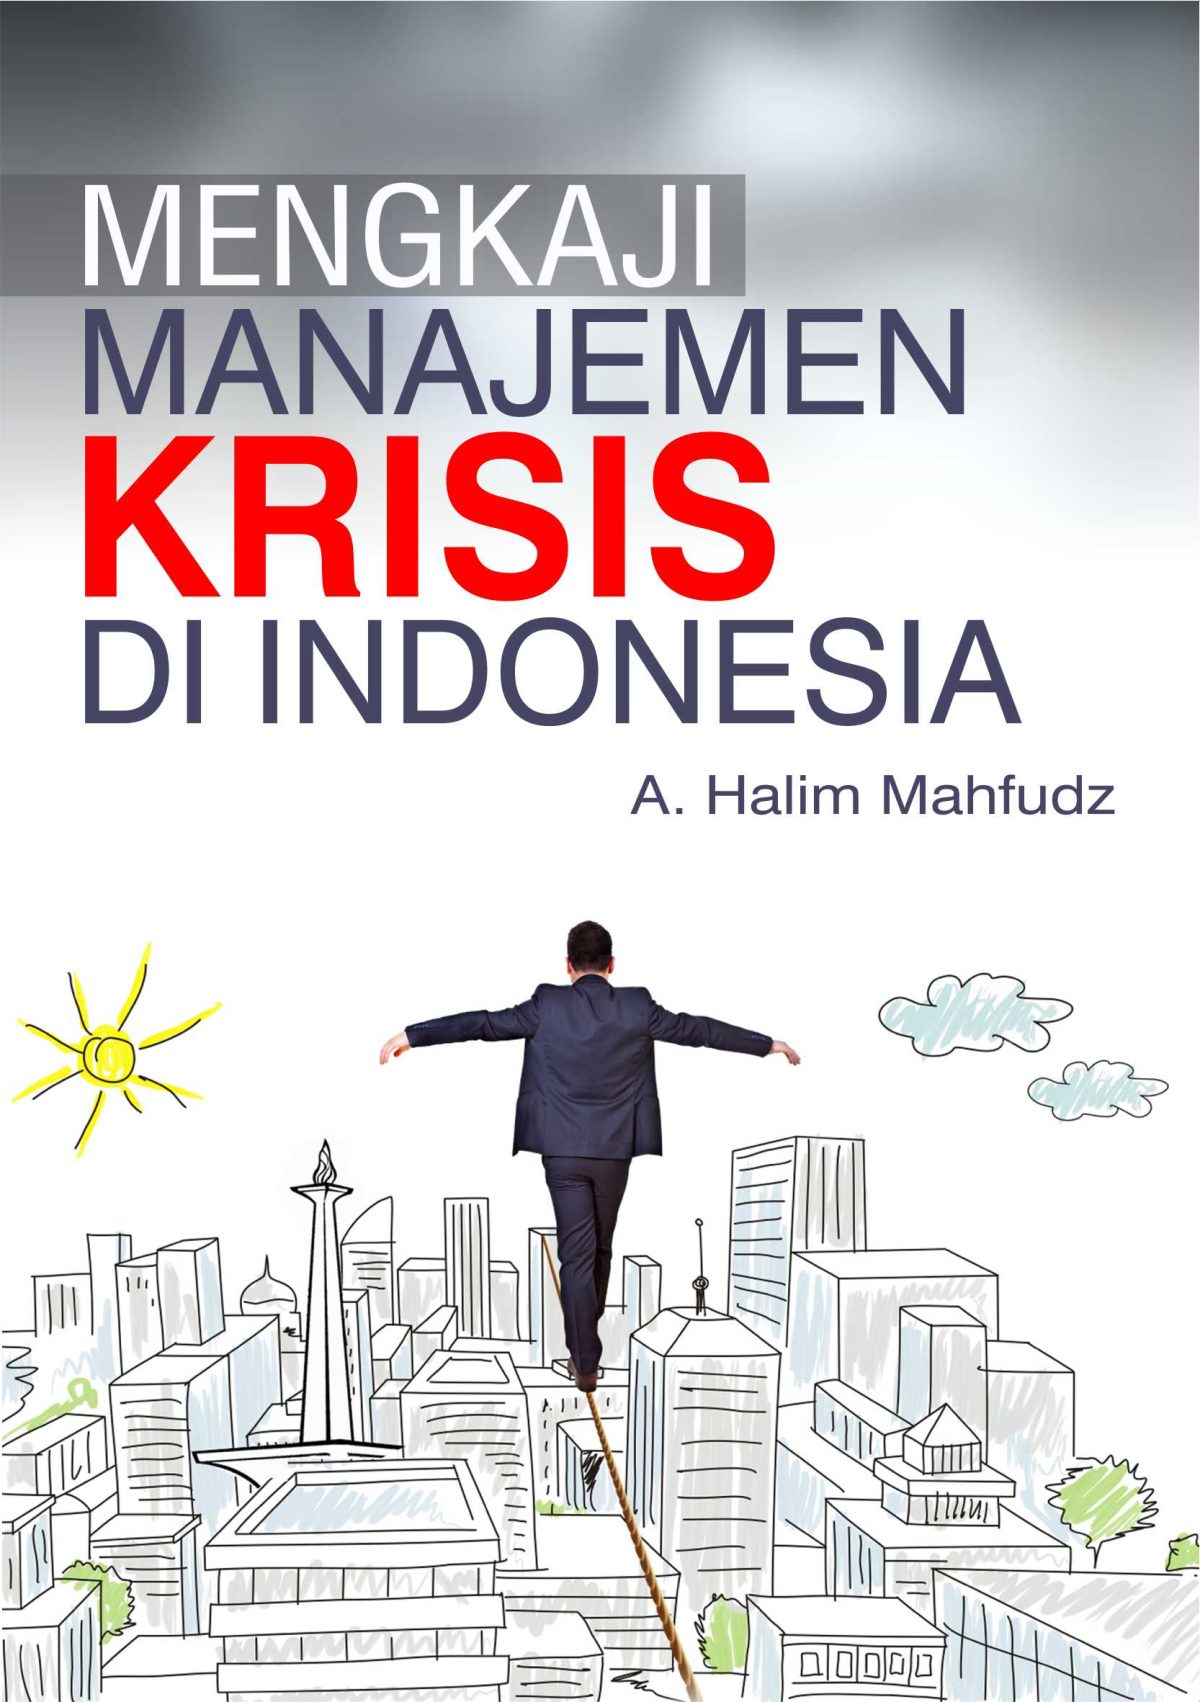 Mengkaji Manajemen Krisis di Indonesia